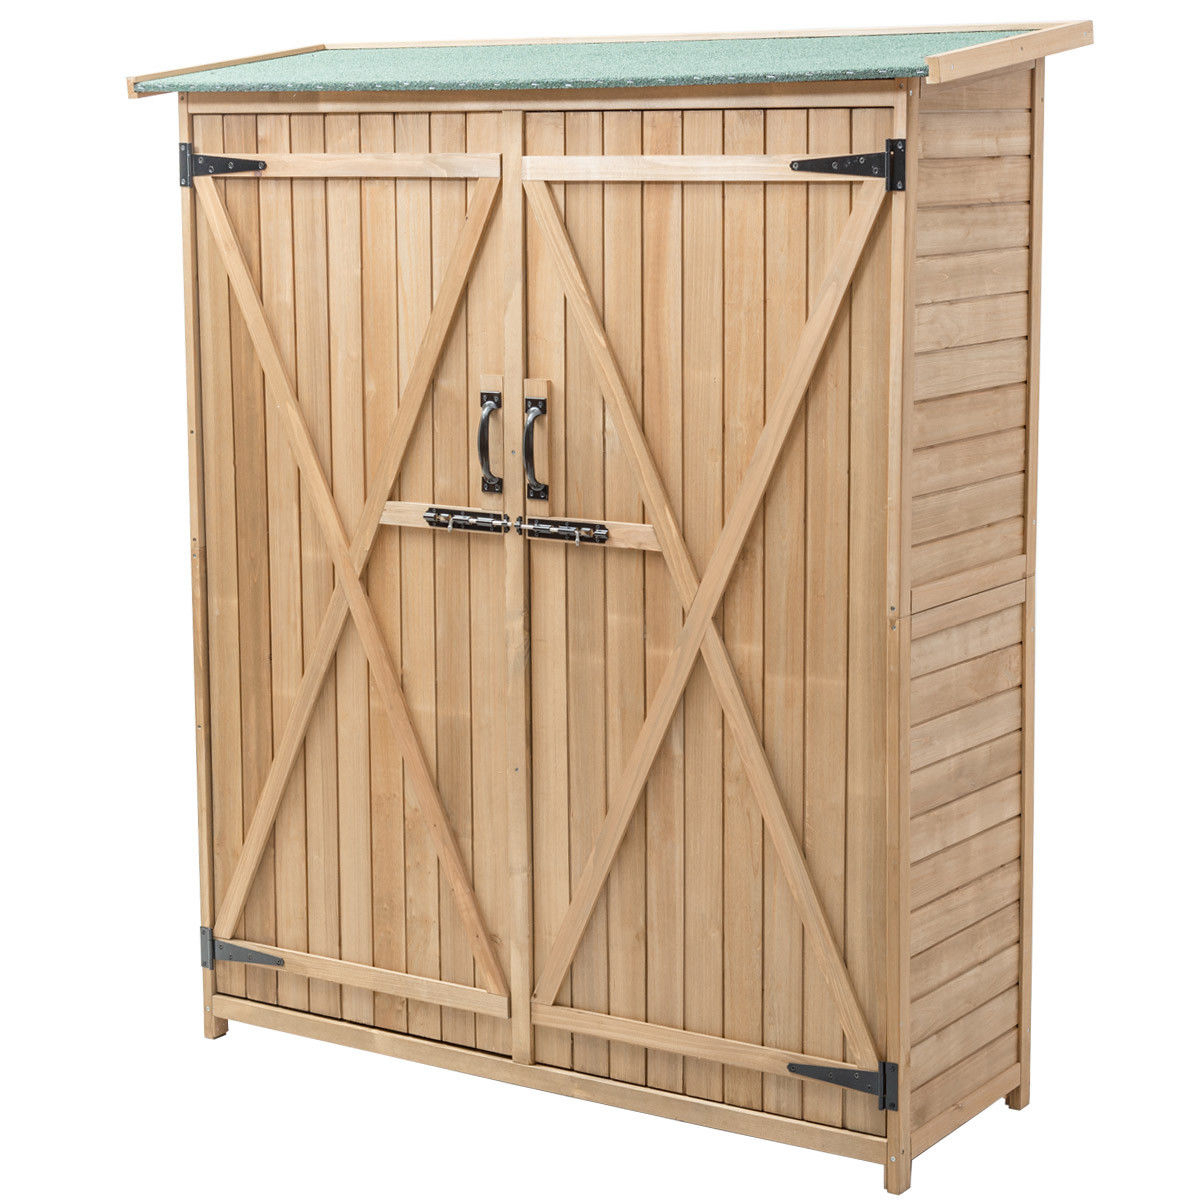 Garden Outdoor Wooden Storage Shed Cabinet Double Doors Fir Wood Lockers